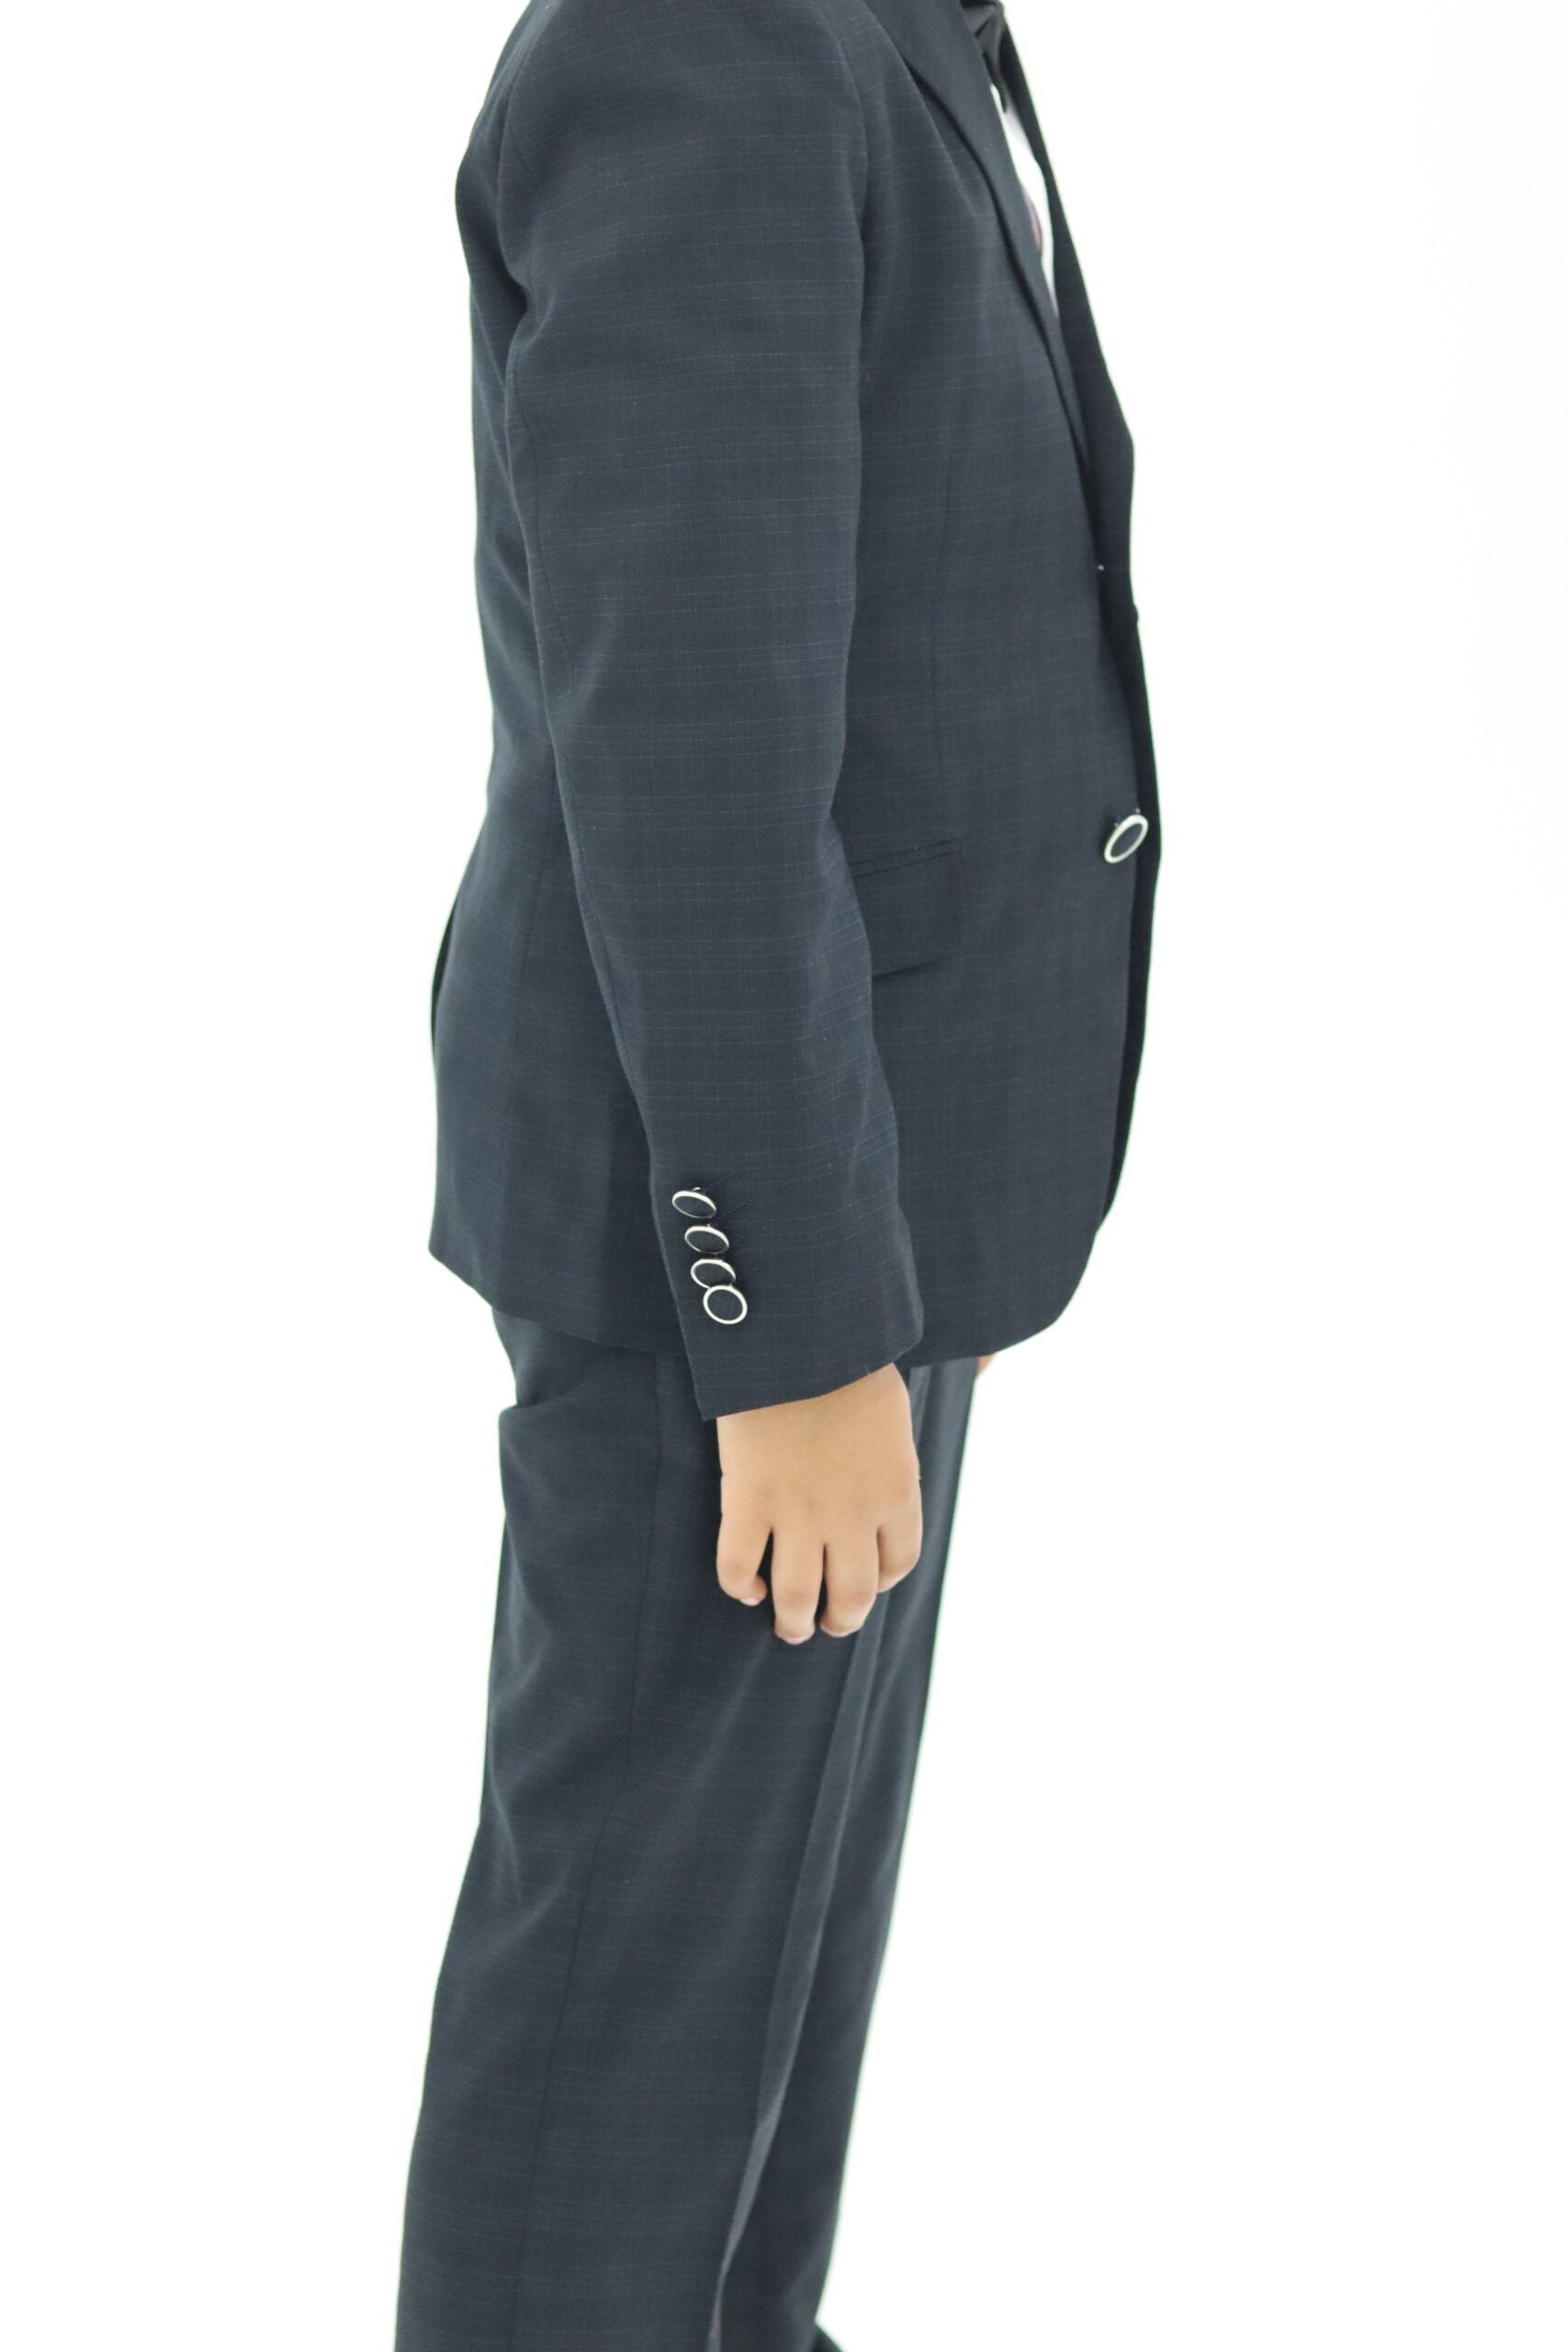 Boy Slim Fit Black Textured Suit 2Pc Set